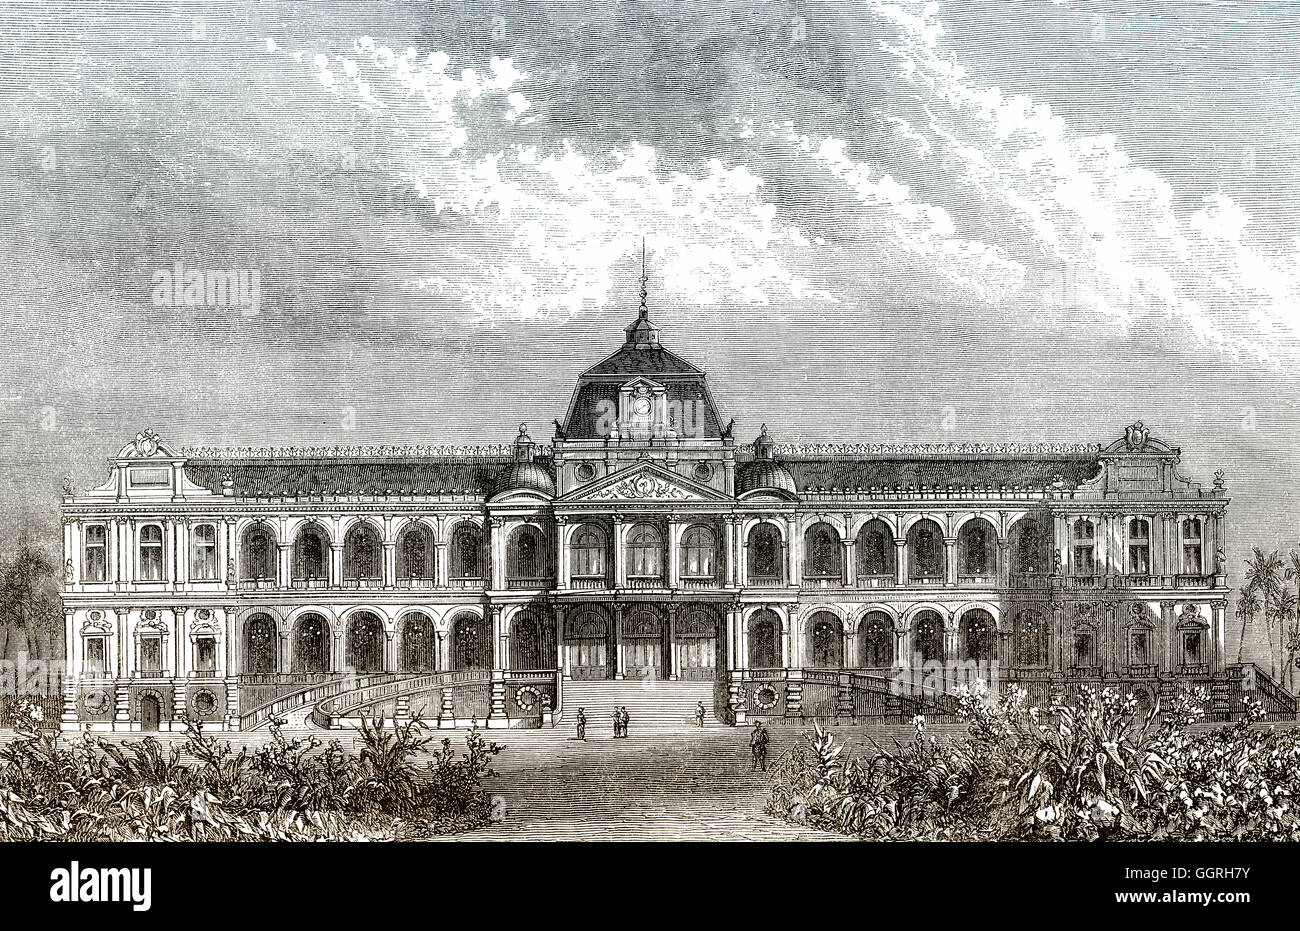 Norodom Palace, Ho Chi Minh City, Vietnam, Asia, 19th century Stock Photo